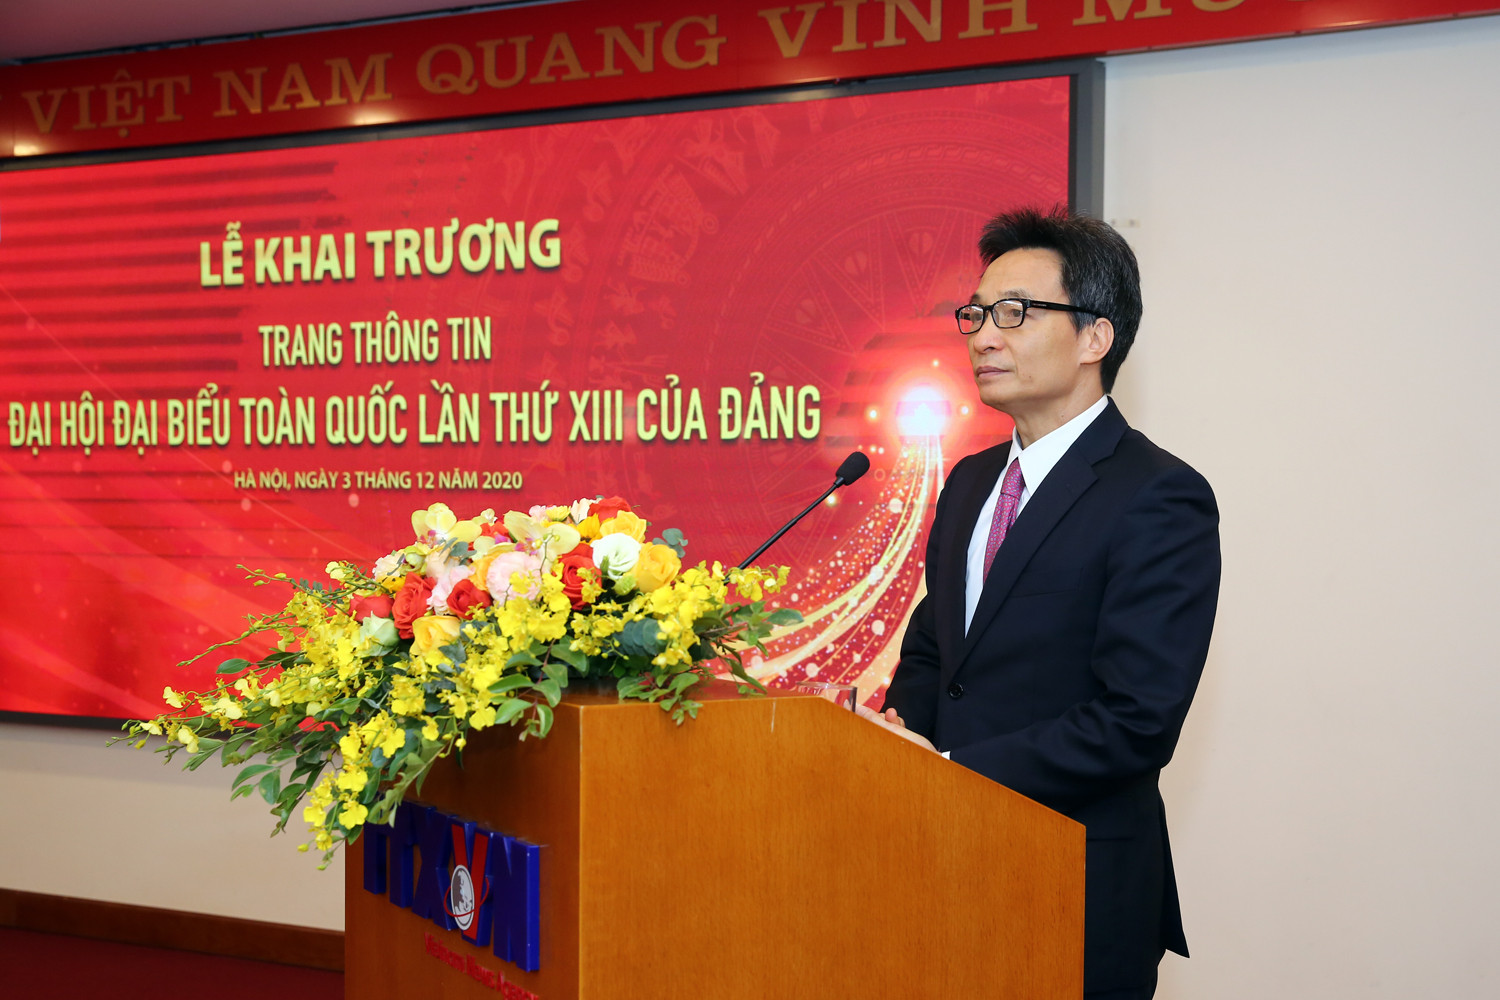 Ra mắt Trang thông tin về Đại hội lần thứ XIII của Đảng - Ảnh 1.